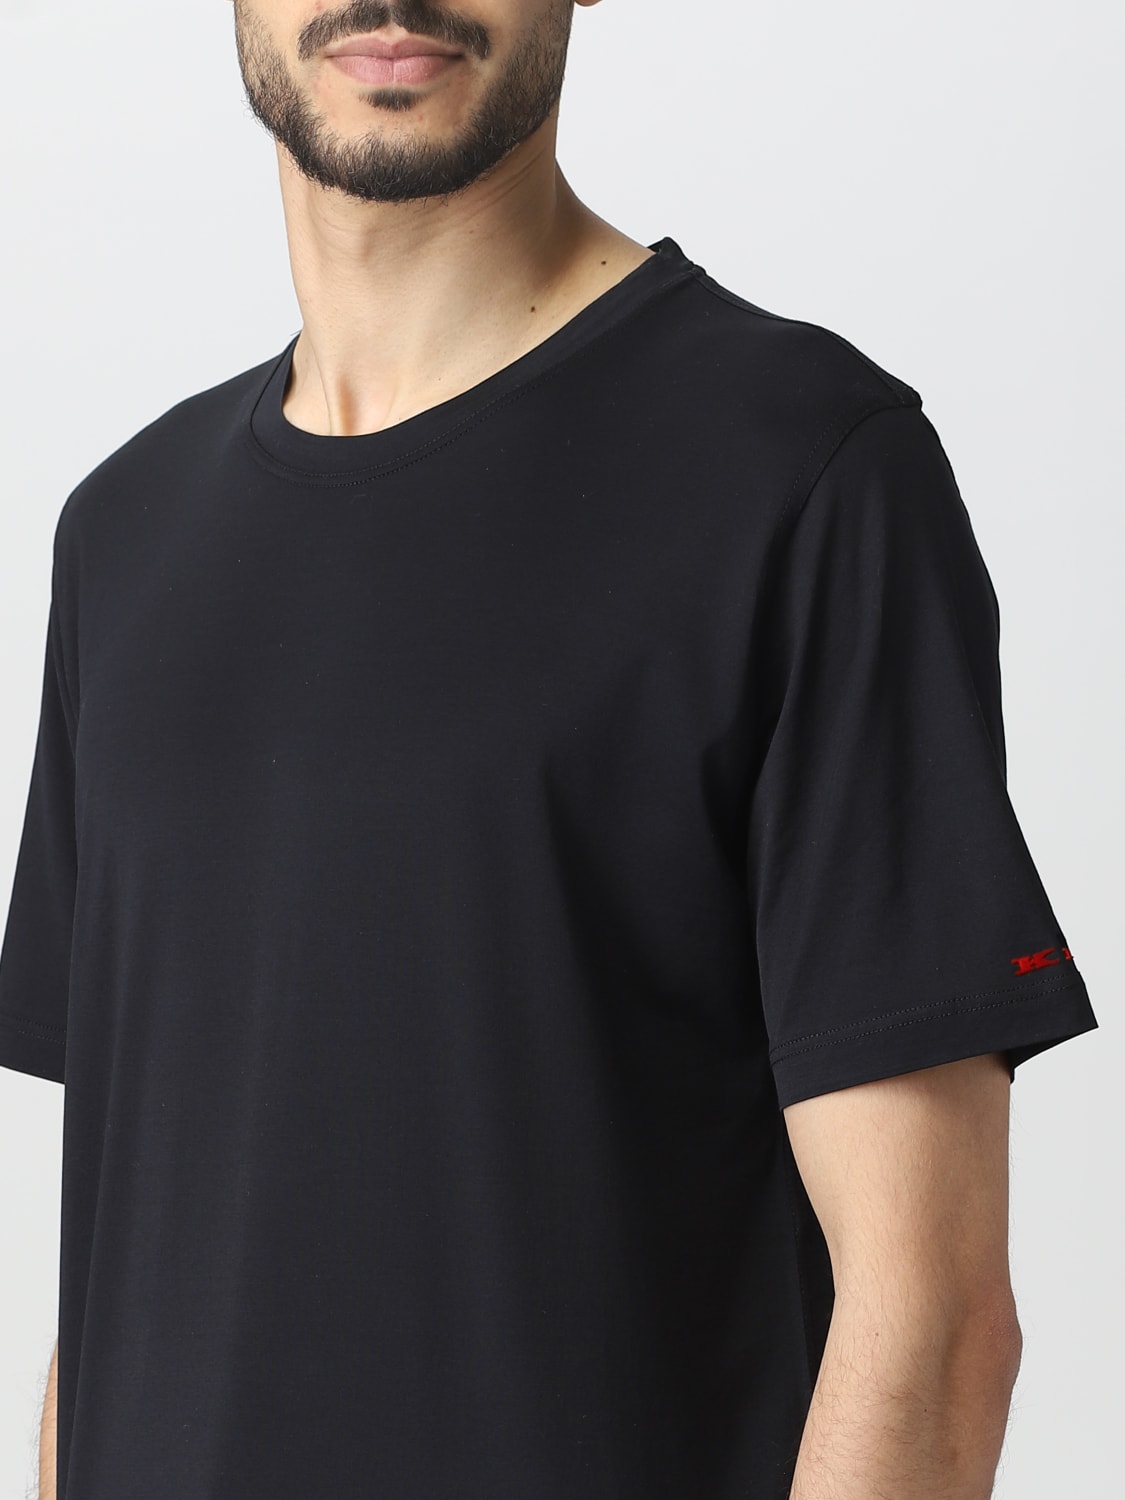 Tシャツ Kiton: Tシャツ Kiton メンズ ブラック 2